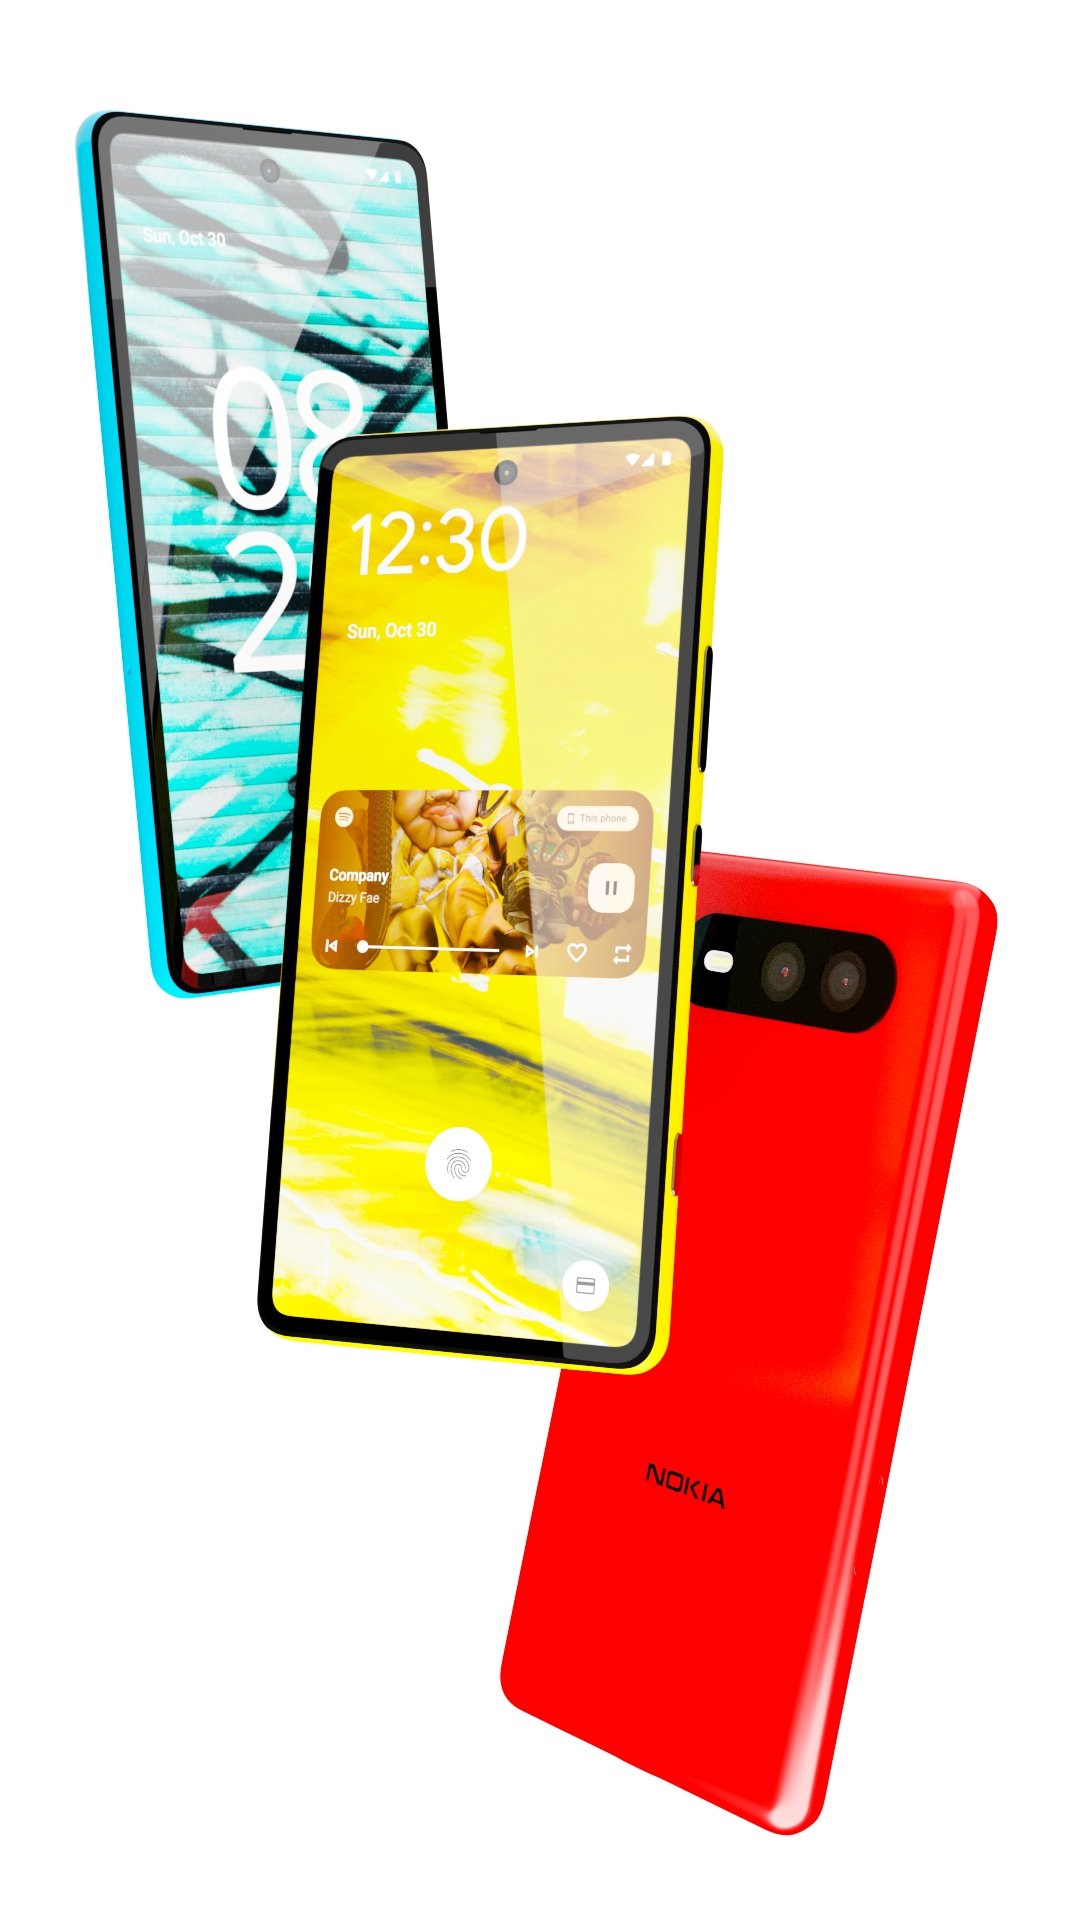 Nokia-Lumia-820-5G-3.jpg